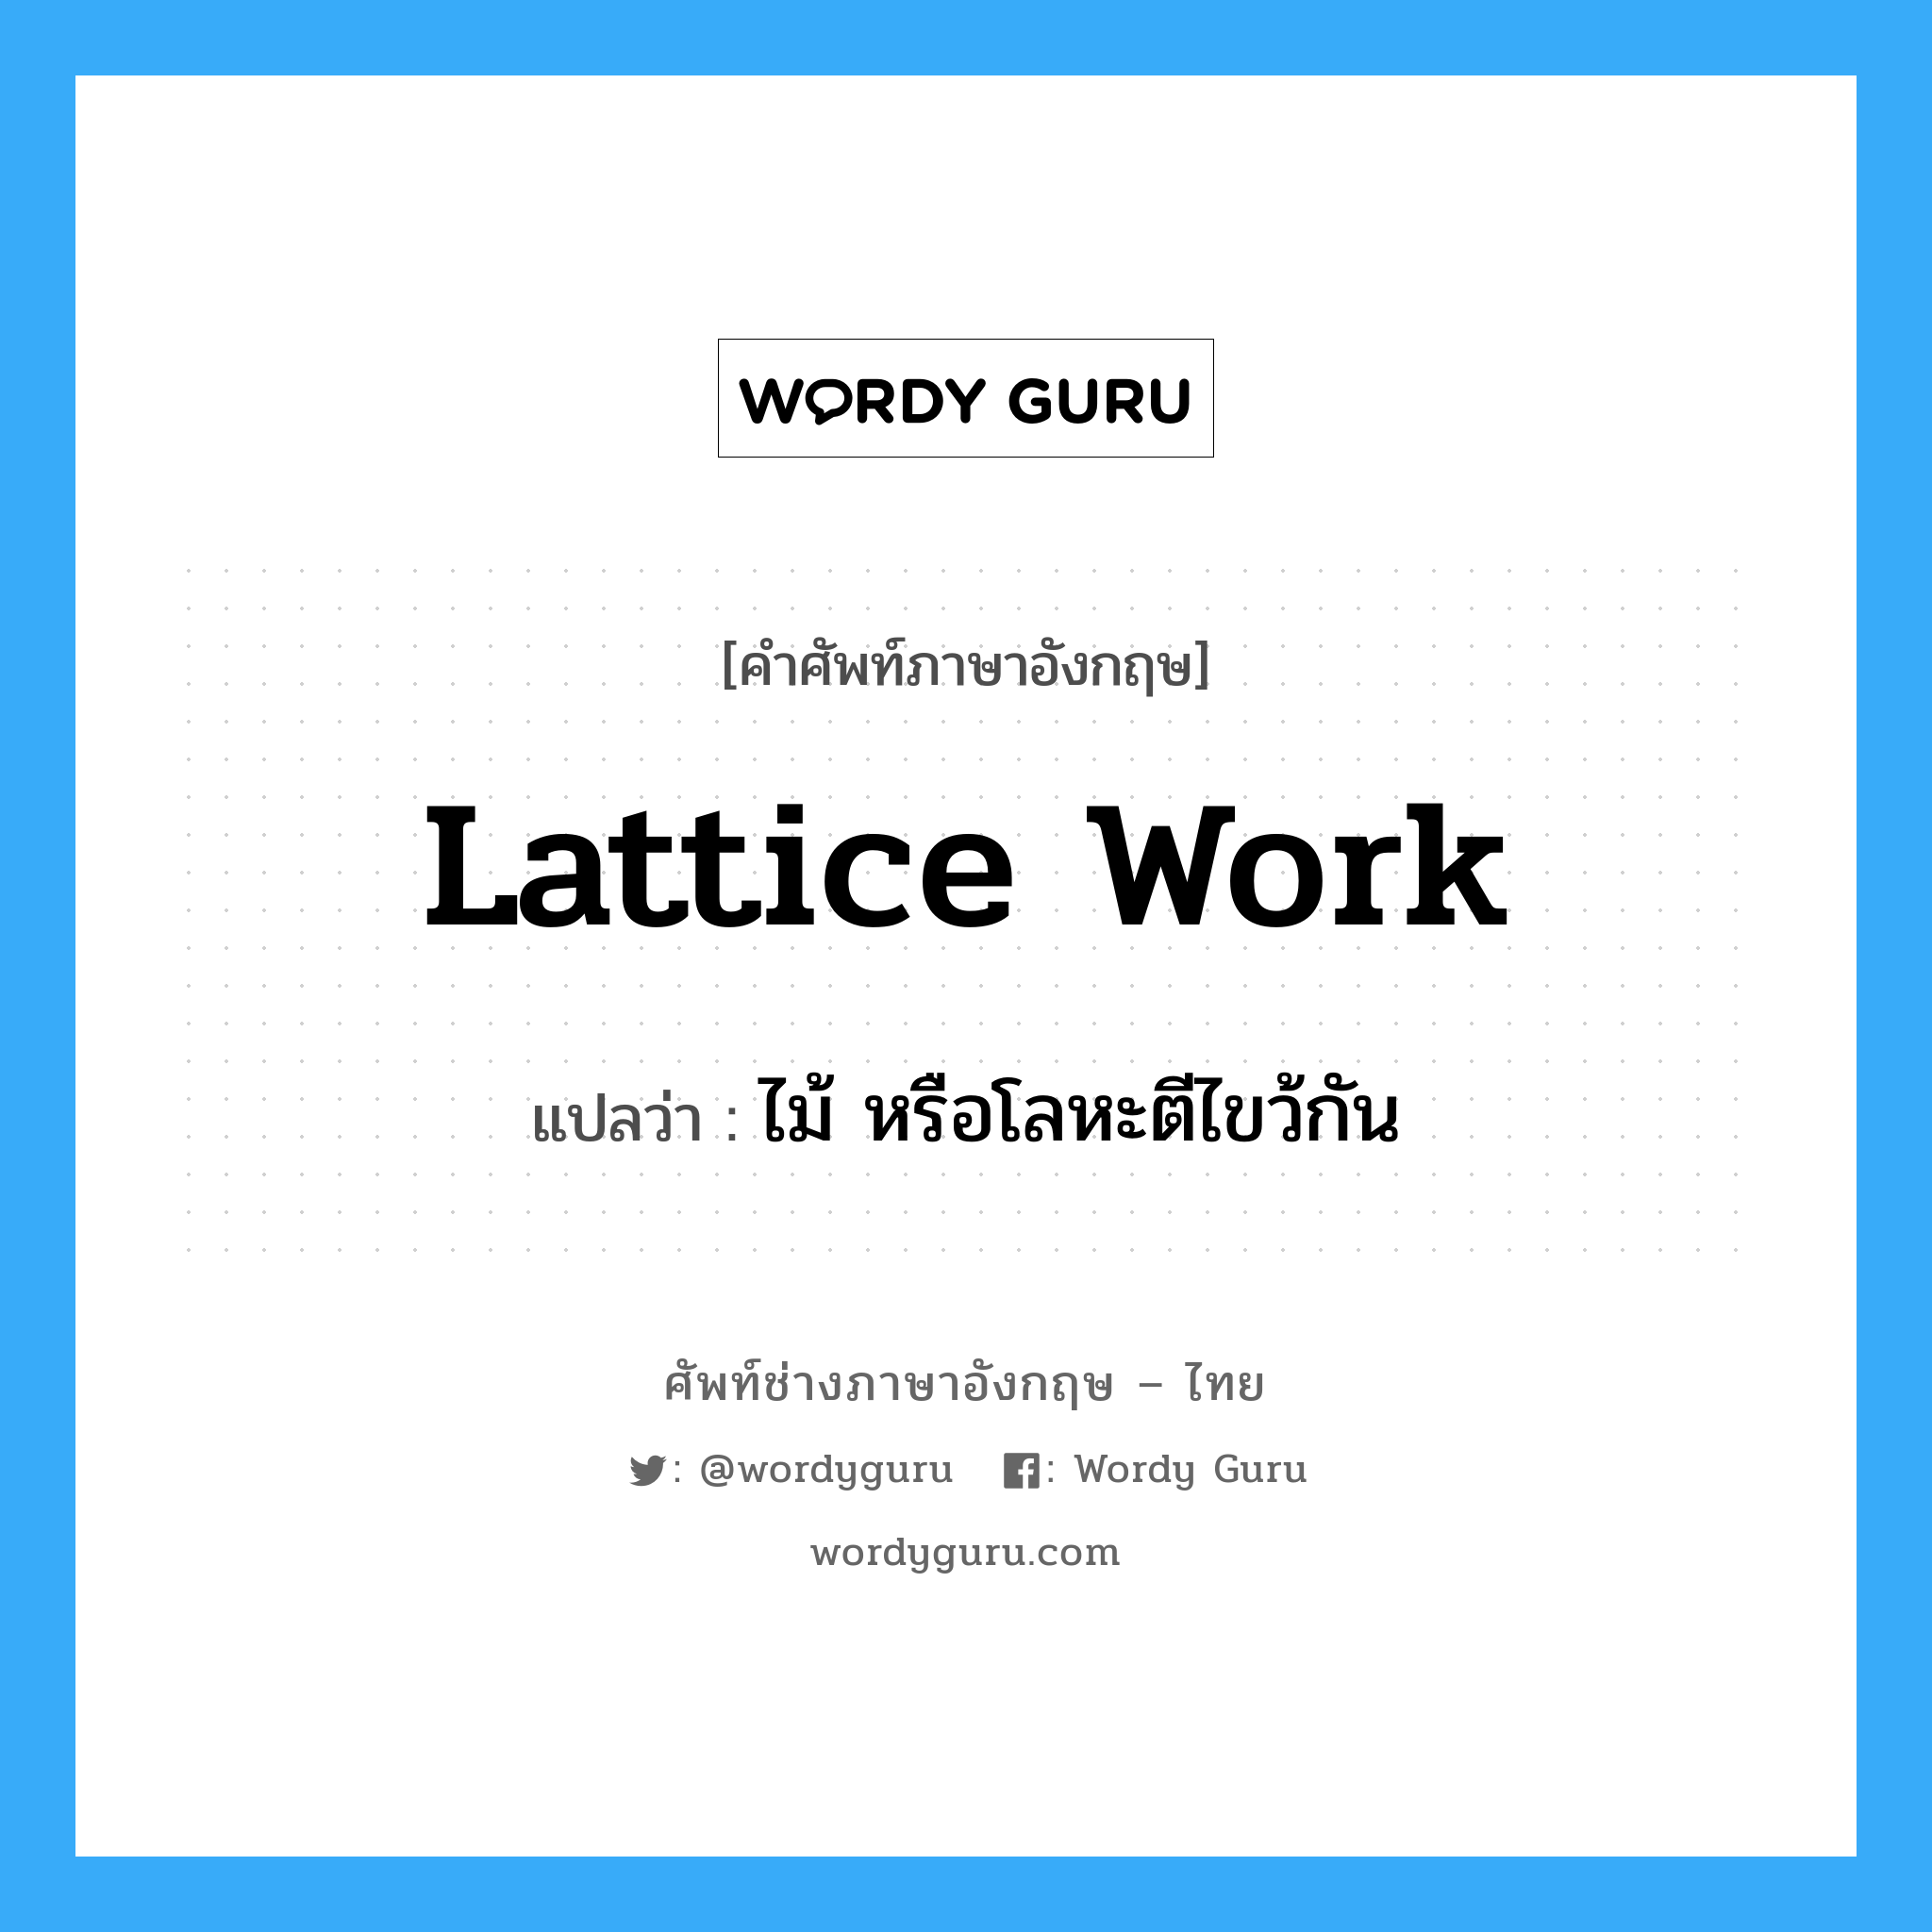 lattice-work แปลว่า?, คำศัพท์ช่างภาษาอังกฤษ - ไทย lattice work คำศัพท์ภาษาอังกฤษ lattice work แปลว่า ไม้ หรือโลหะตีไขว้กัน